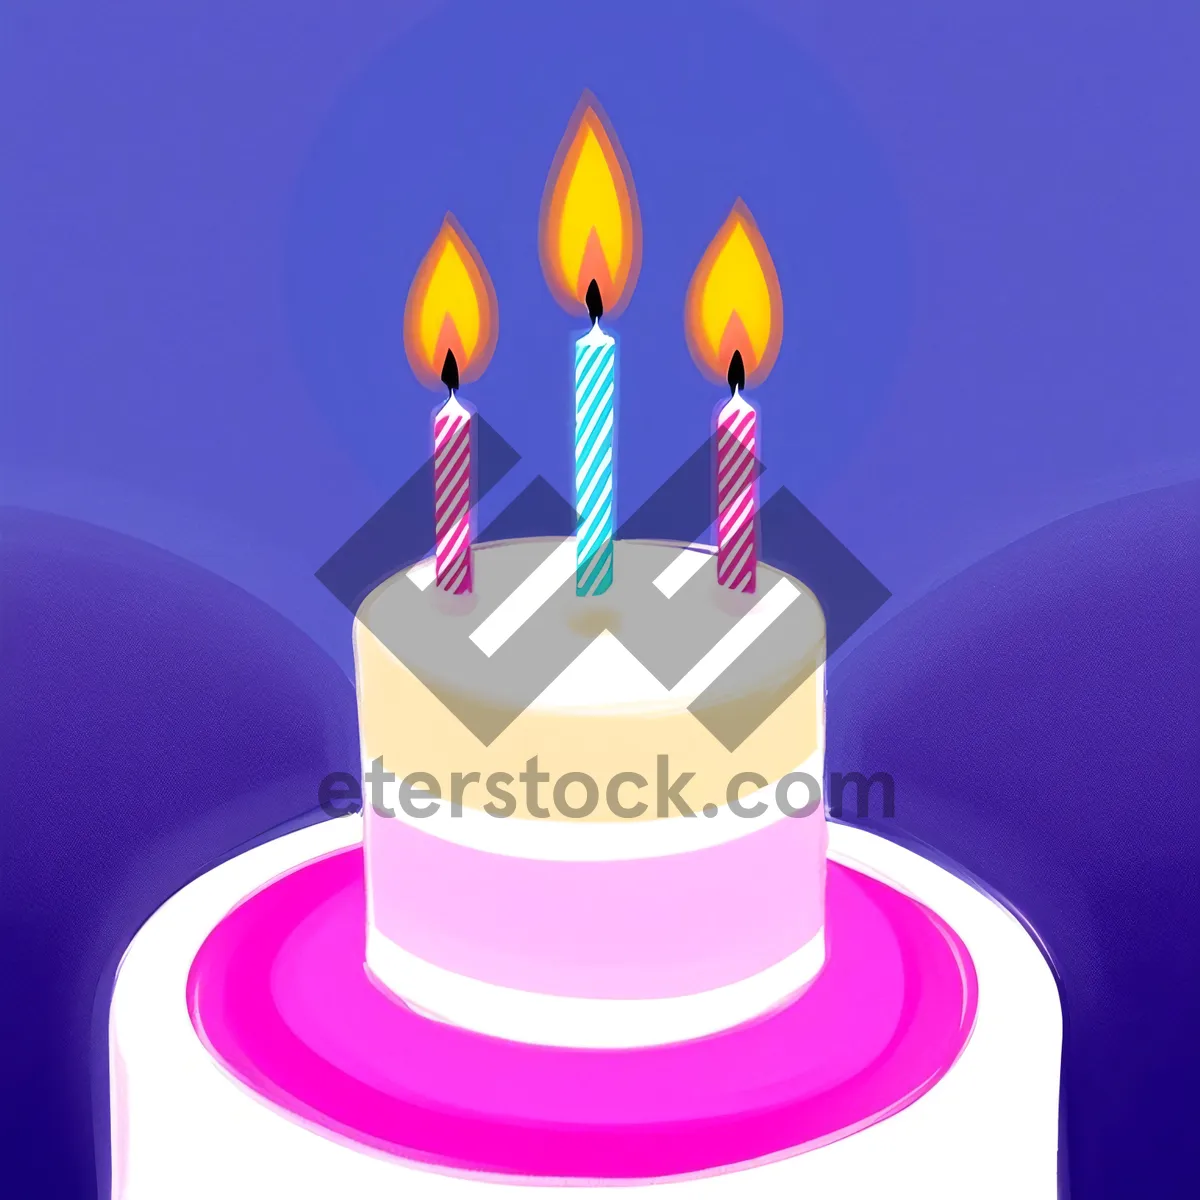 Picture of Birthday Celebration: Illuminated Cake with Burning Candles